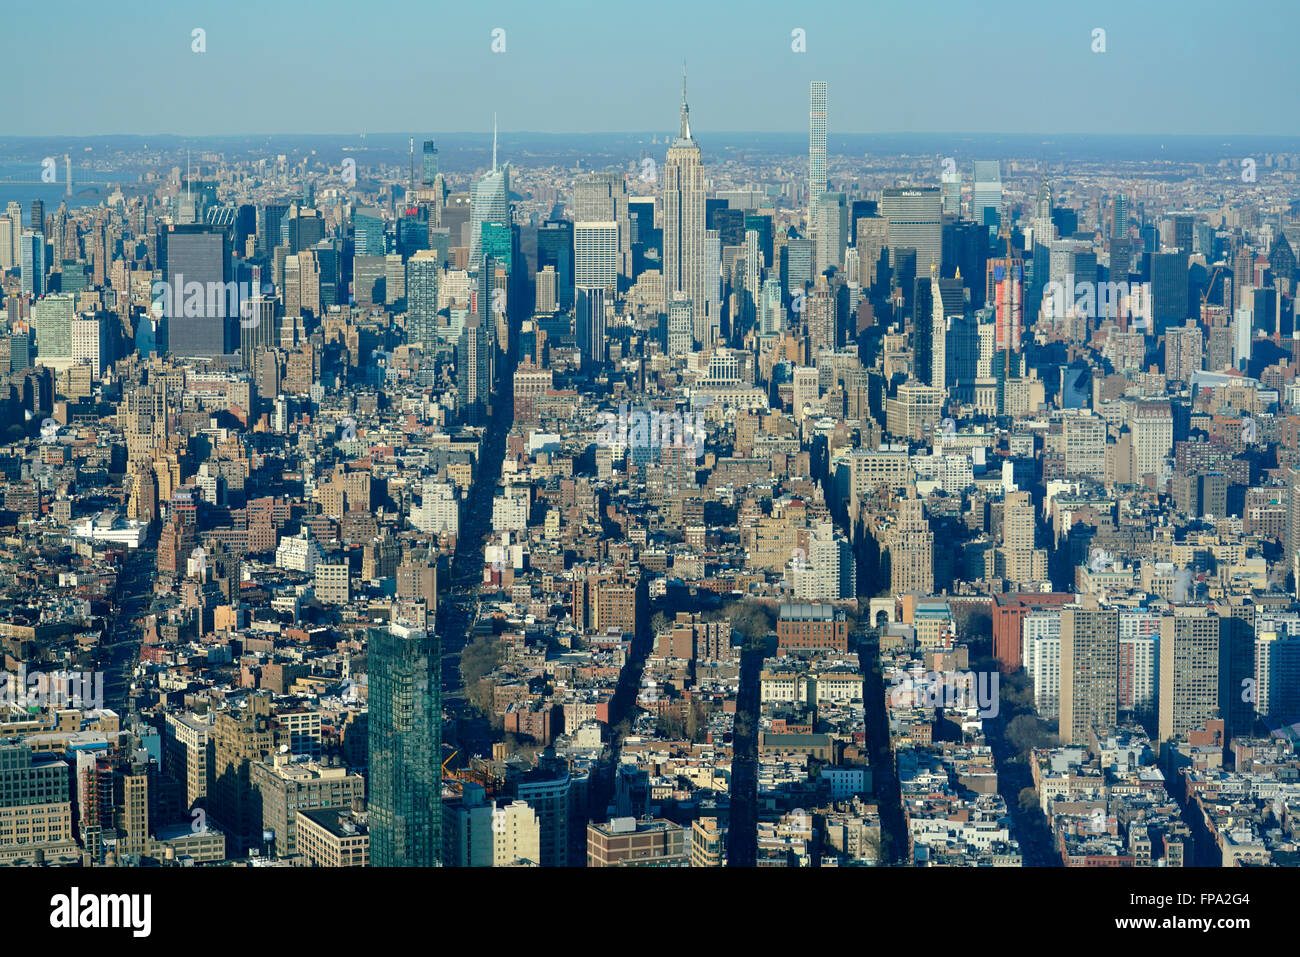 Vue aérienne de l'île de Manhattan face au nord d'un observatoire mondial au World Trade Center, Manhattan, New York City, USA Banque D'Images